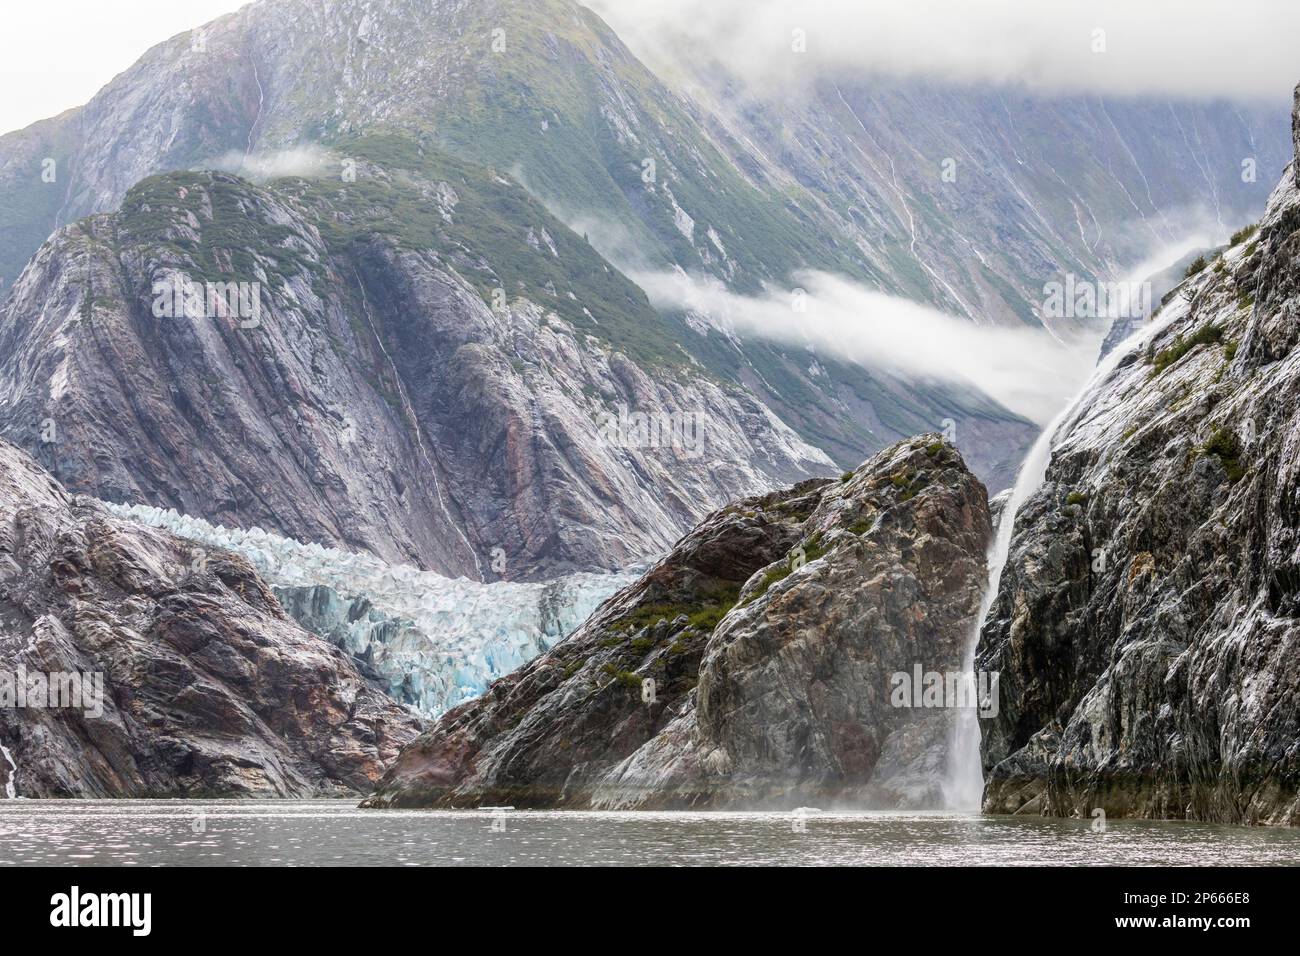 Une chute d'eau près du glacier Sawyer dans la région sauvage de Tracy Arm-Fords Terror, sud-est de l'Alaska, États-Unis d'Amérique, Amérique du Nord Banque D'Images